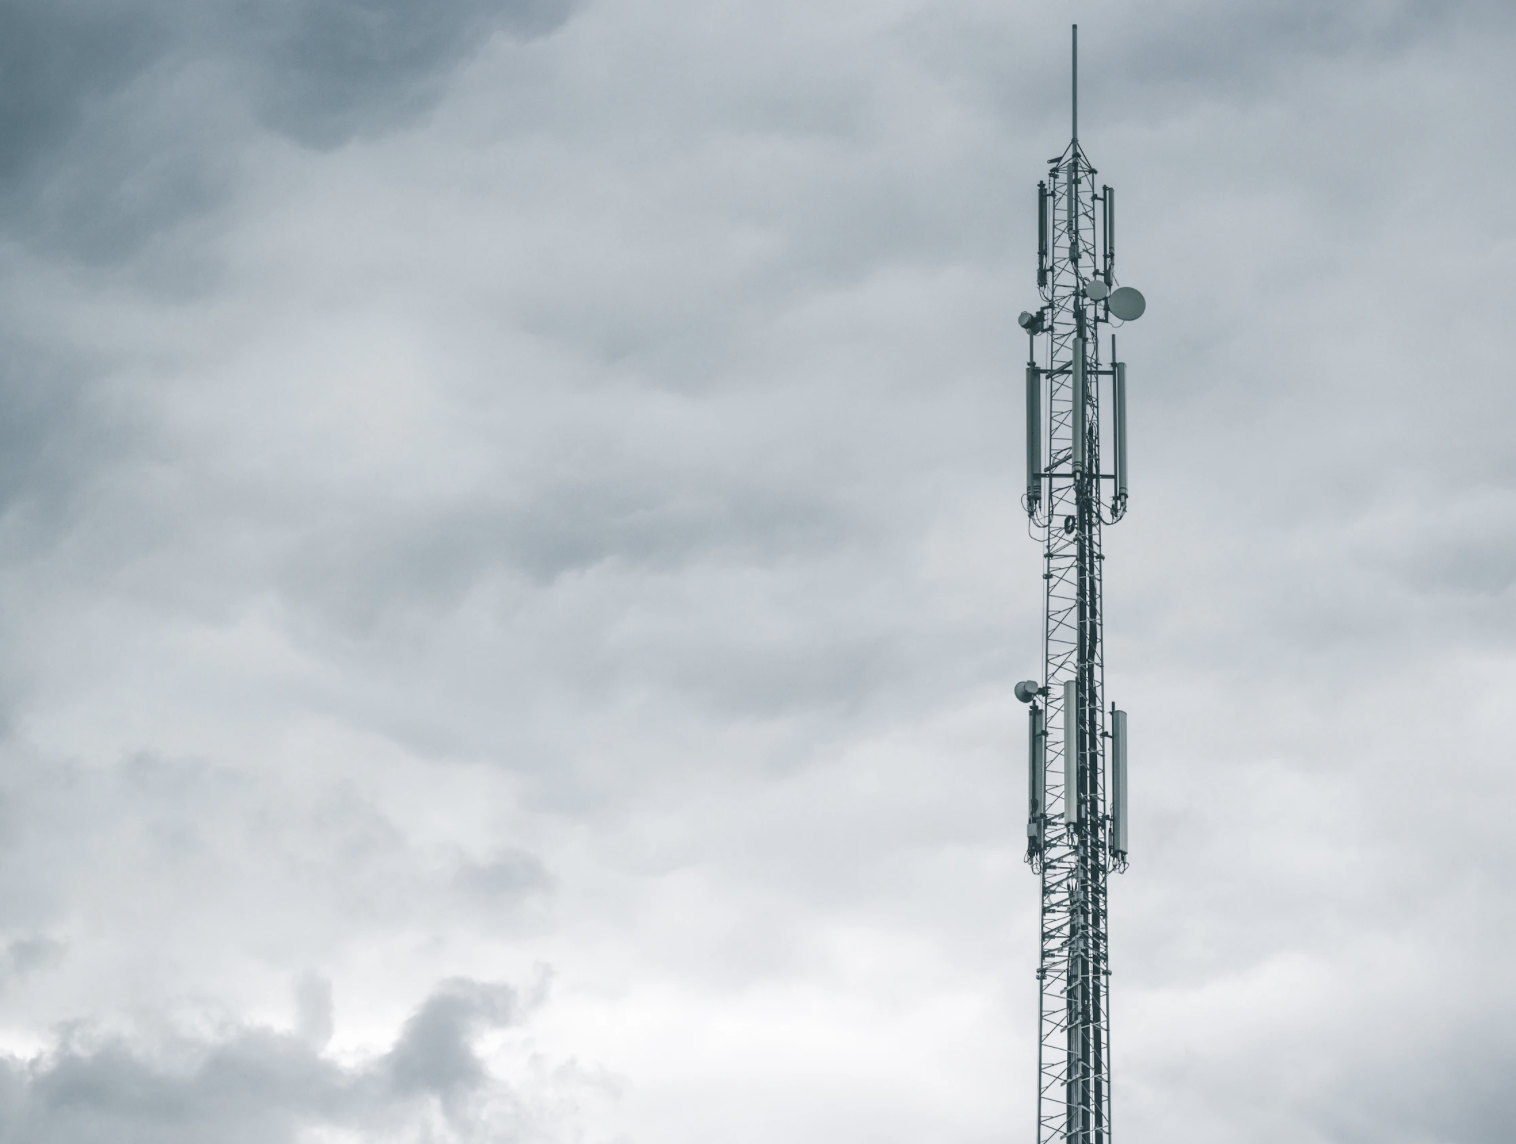 Grupa Polsat Plus przy wsparciu Asseco Poland wdrożyła nowy system zarządzania usługami telekomunikacyjnymi